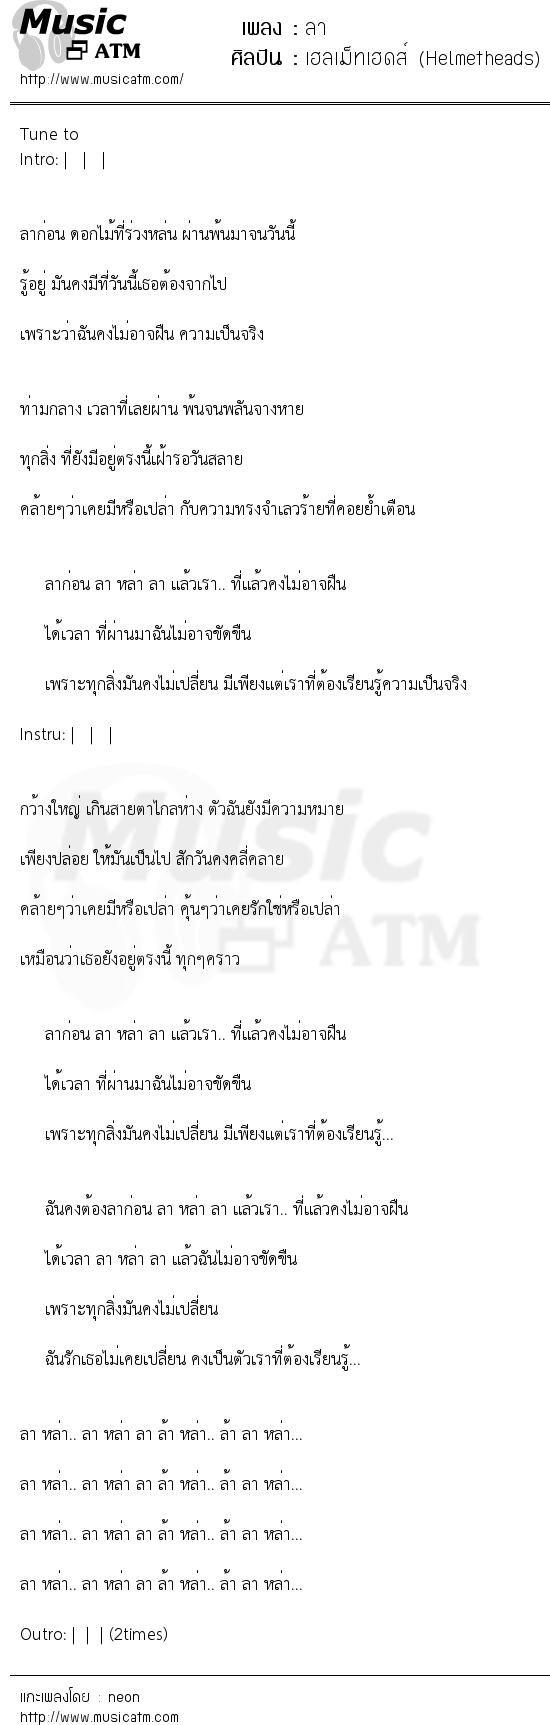 เนื้อเพลง ลา - เฮลเม็ทเฮดส์ (Helmetheads) | เพลงไทย